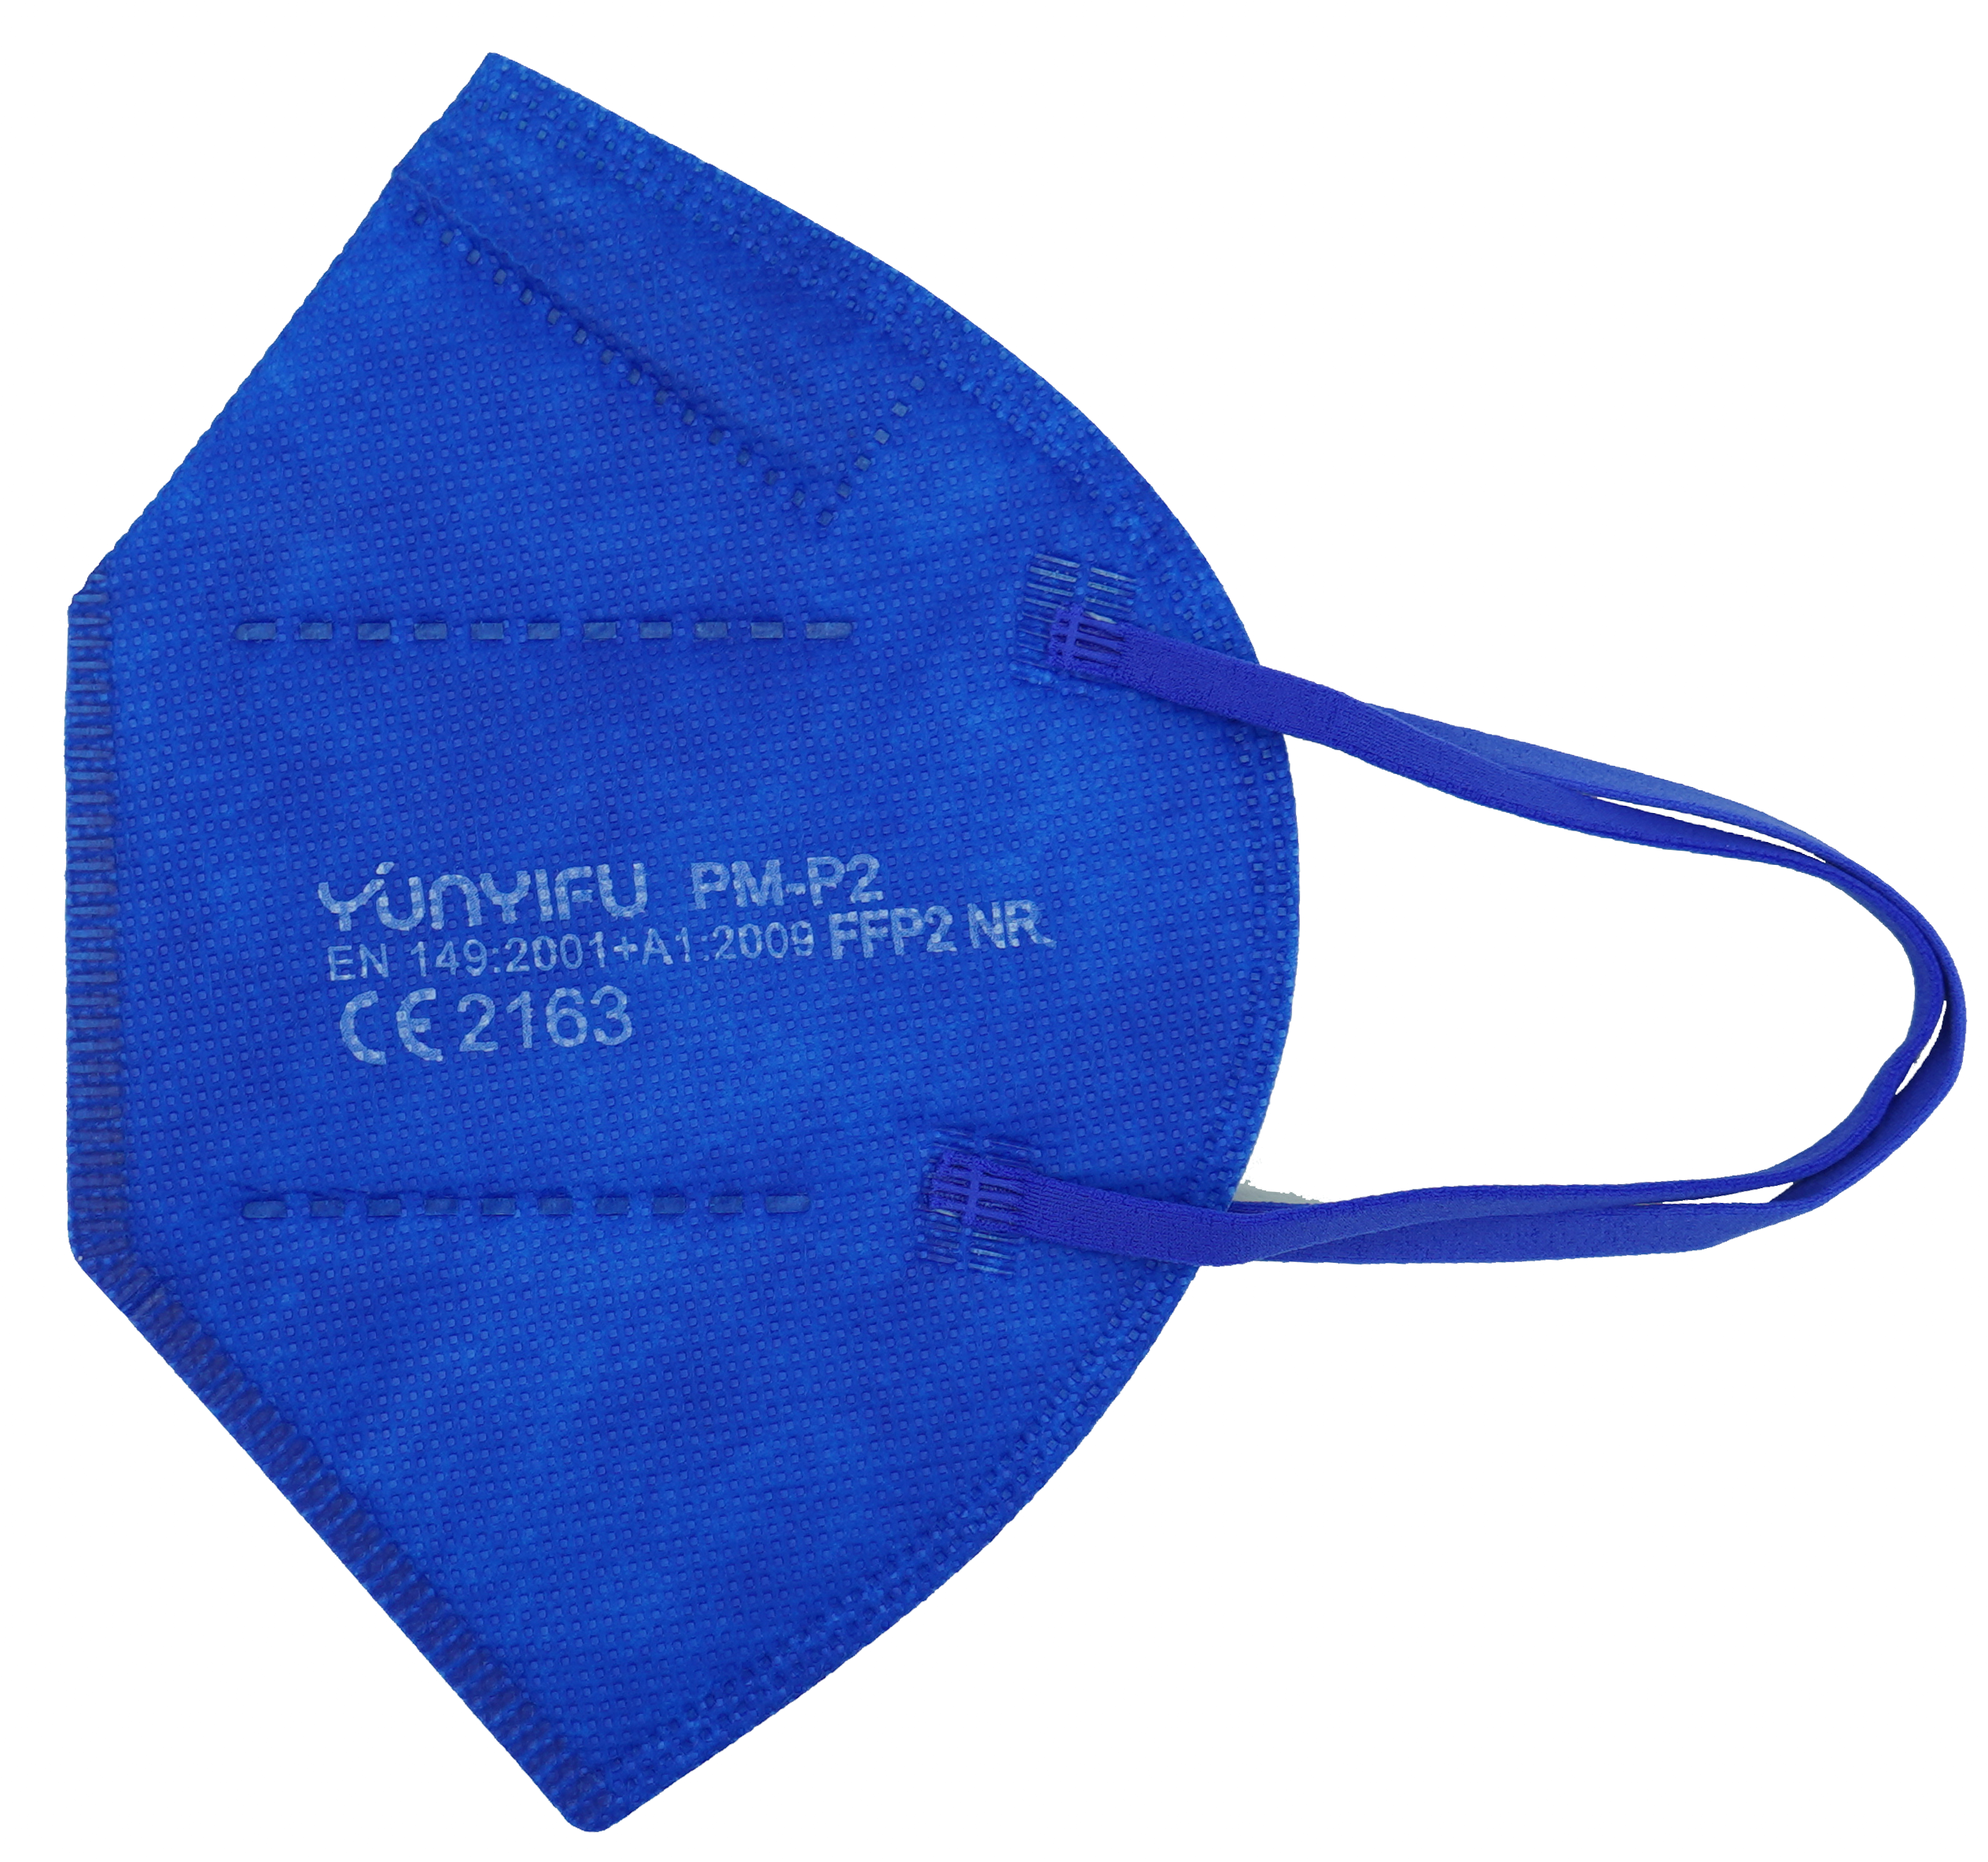 Atemschutz Mundschutz FFP 2 Maske, blau, VE = 10 Stück